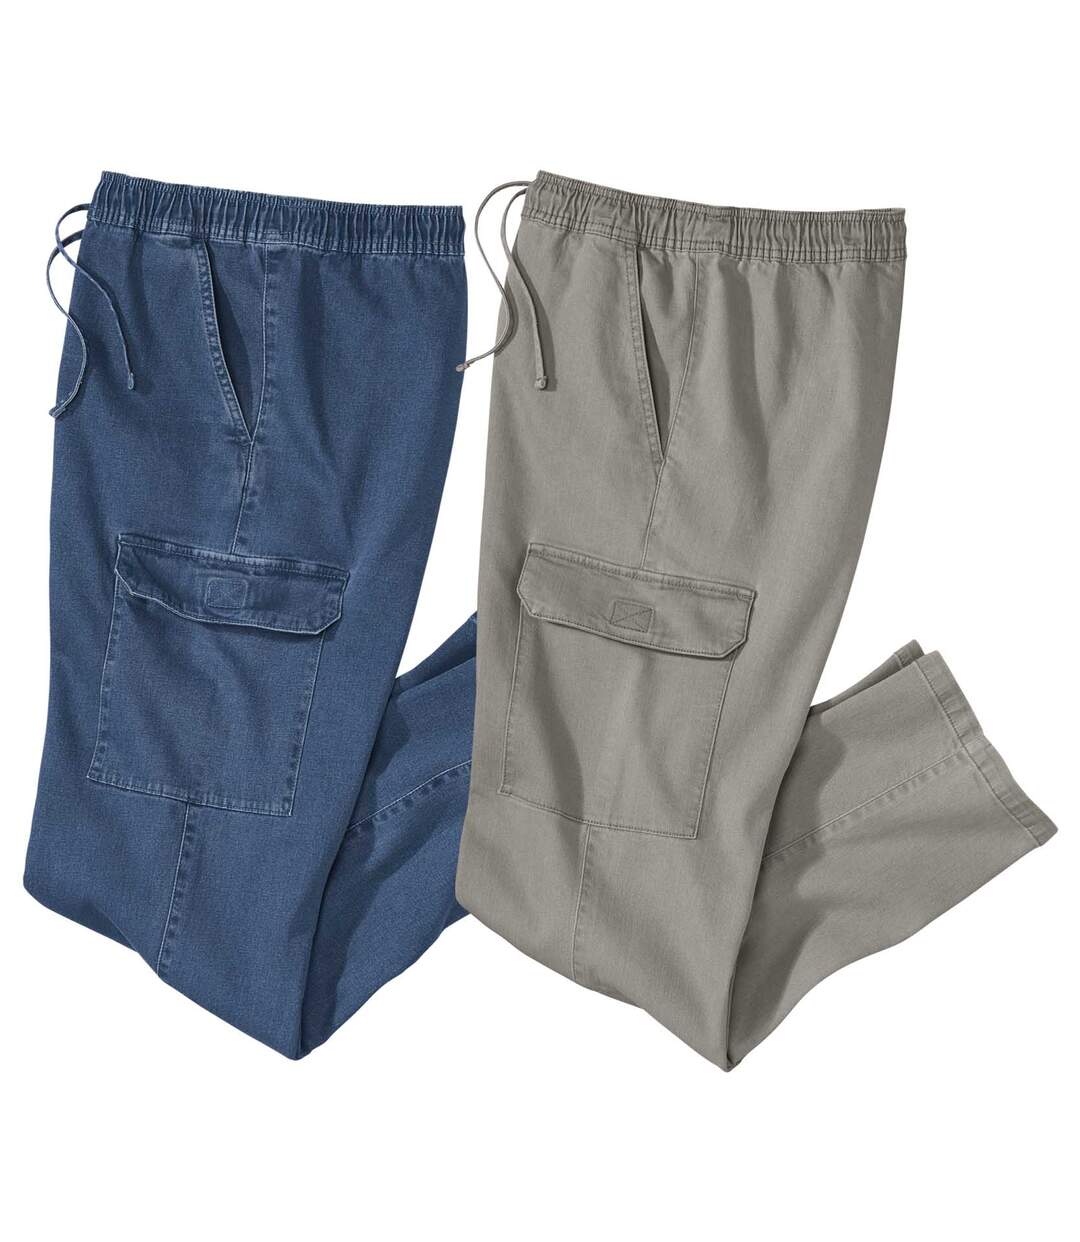 Pack of 2 Men's Casual Jeans - Blue Gray Atlas For Men